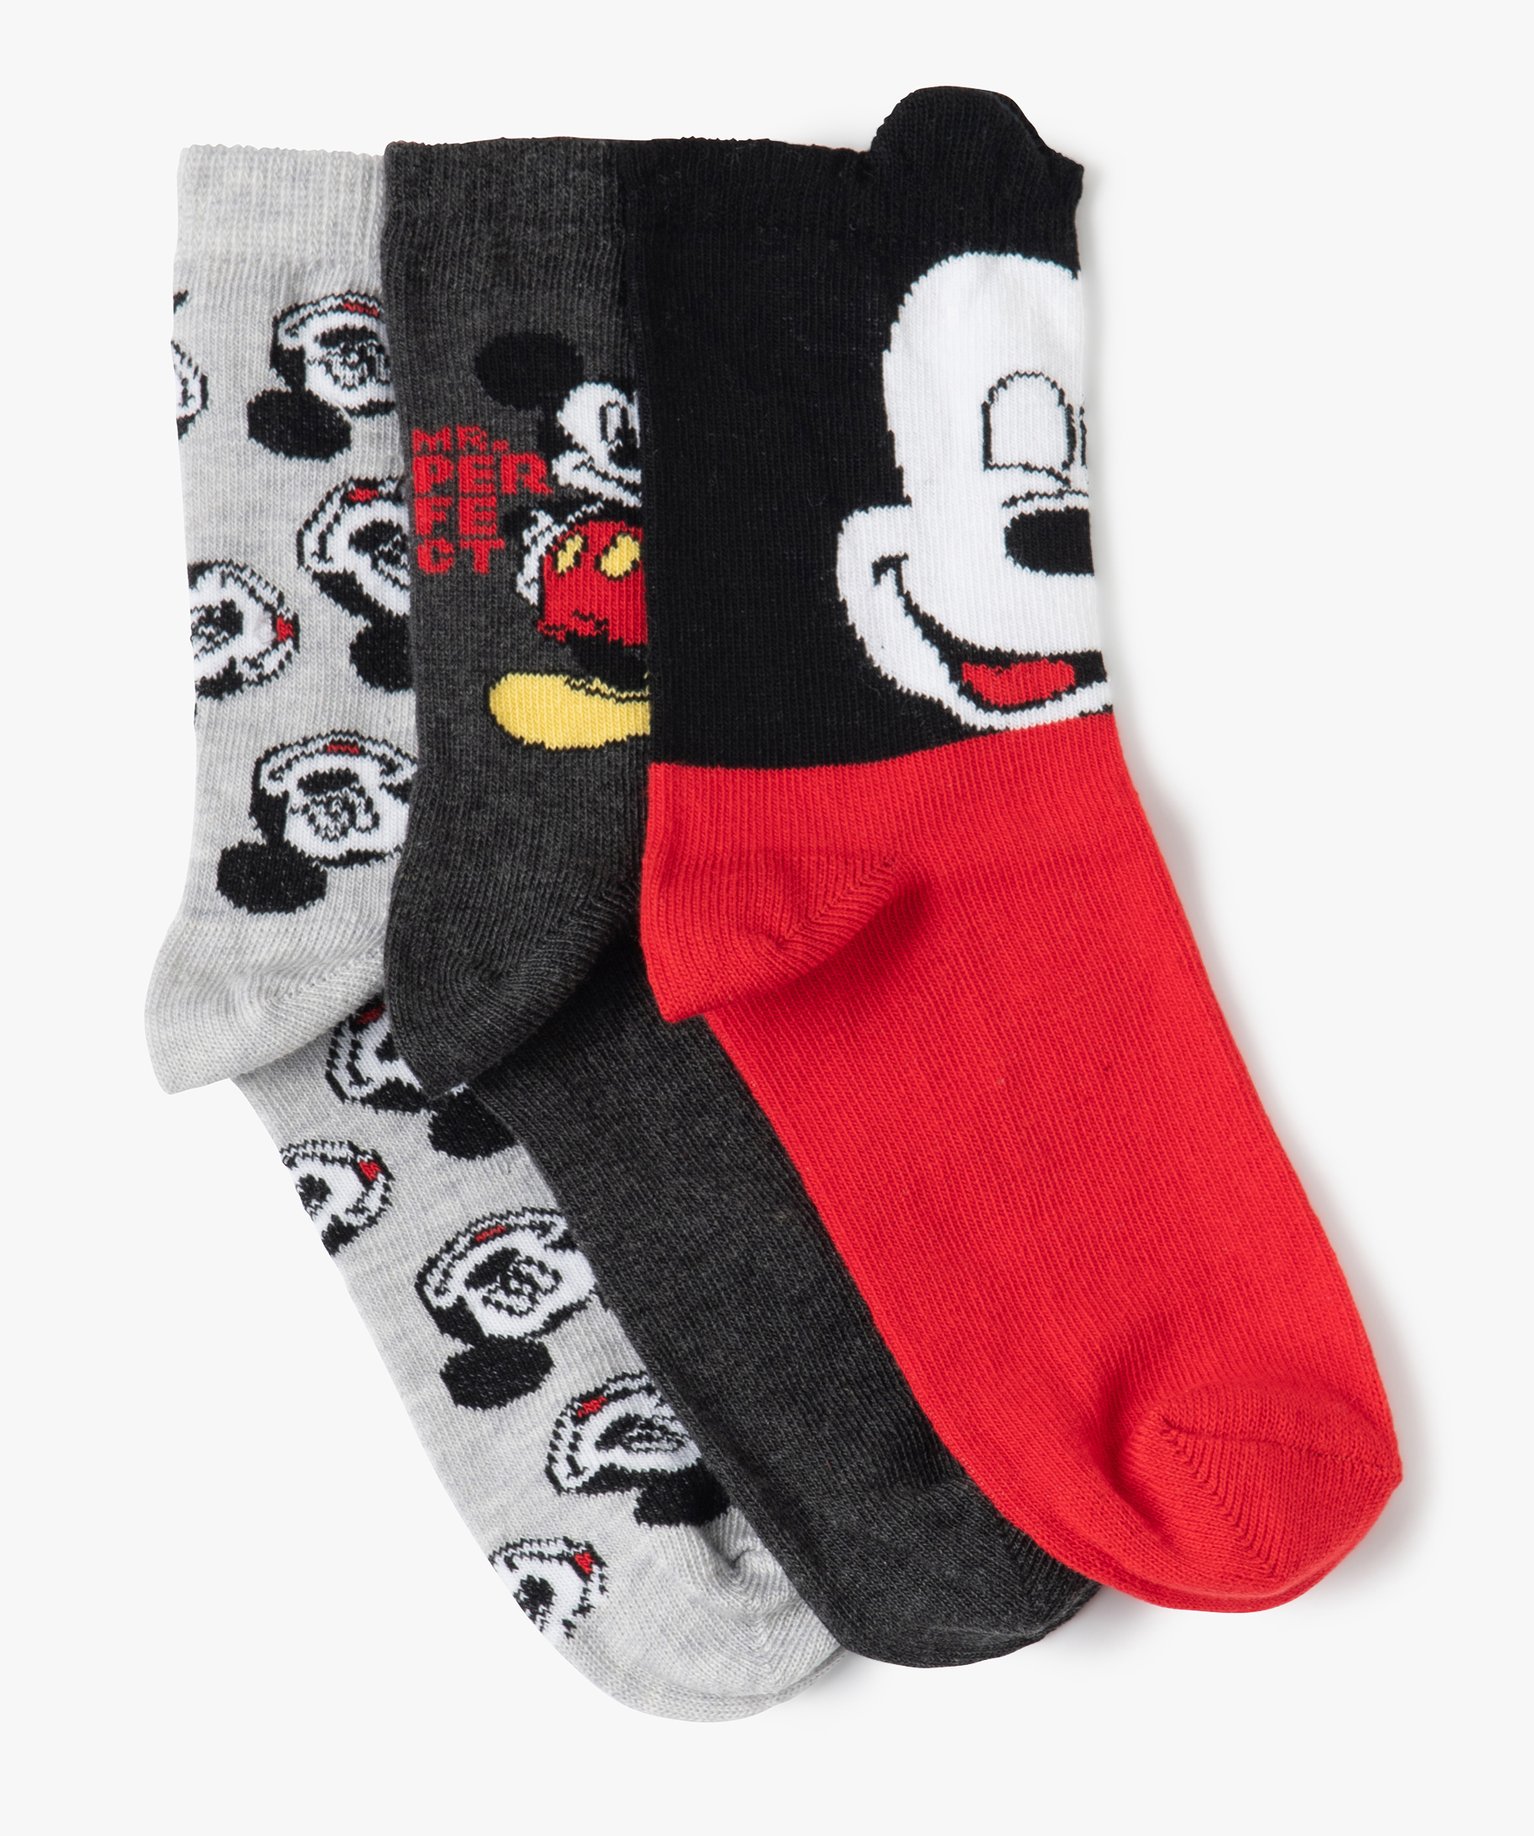 Mickey Mouse Disney Garçons Pyjama avec chaussettes 4 ans